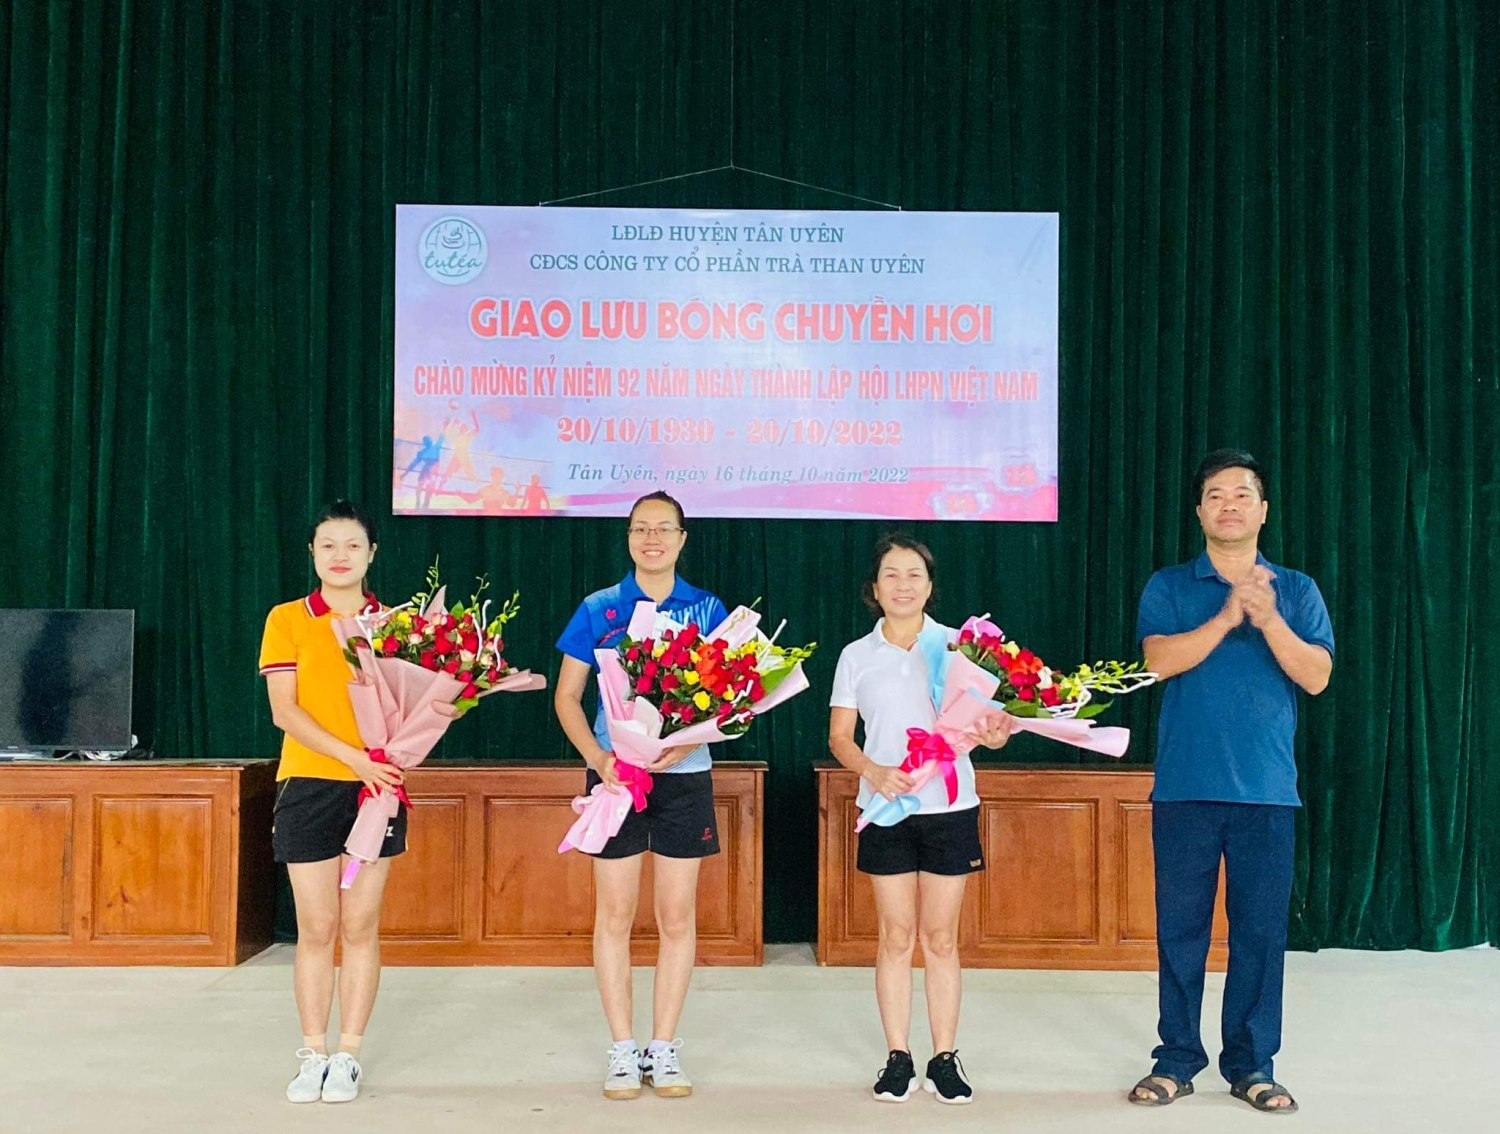 Đc Vũ Hữu Mạnh, PGĐ Công ty tặng hoa cho các đội nữ